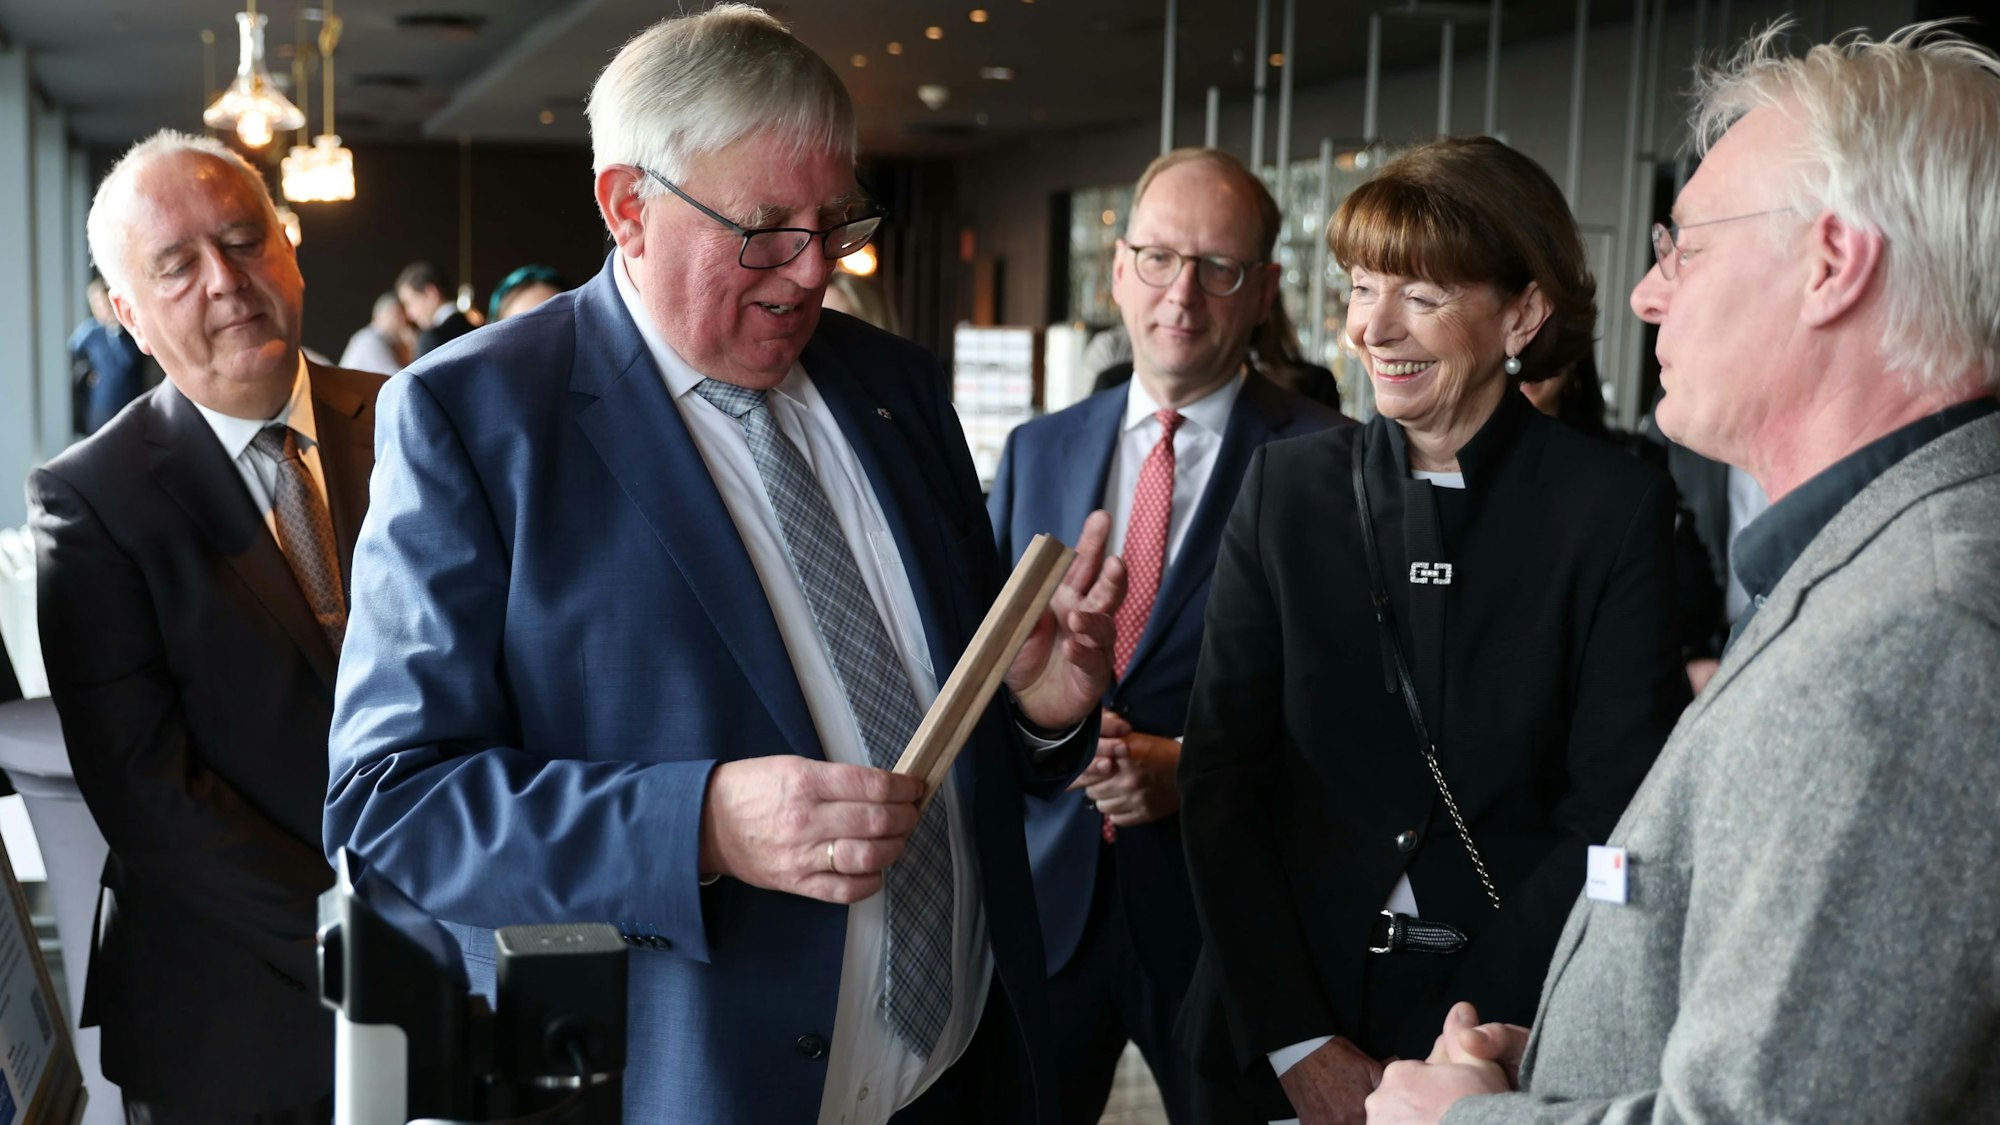 Einblicke in die Anstrengungen der regionalen Wirtschaft holten sich NRW-Minister Karl-Josef Laumann (2.v.l.) und Henriette Reker beim Katerfrühstück der Arbeitgeber Köln.